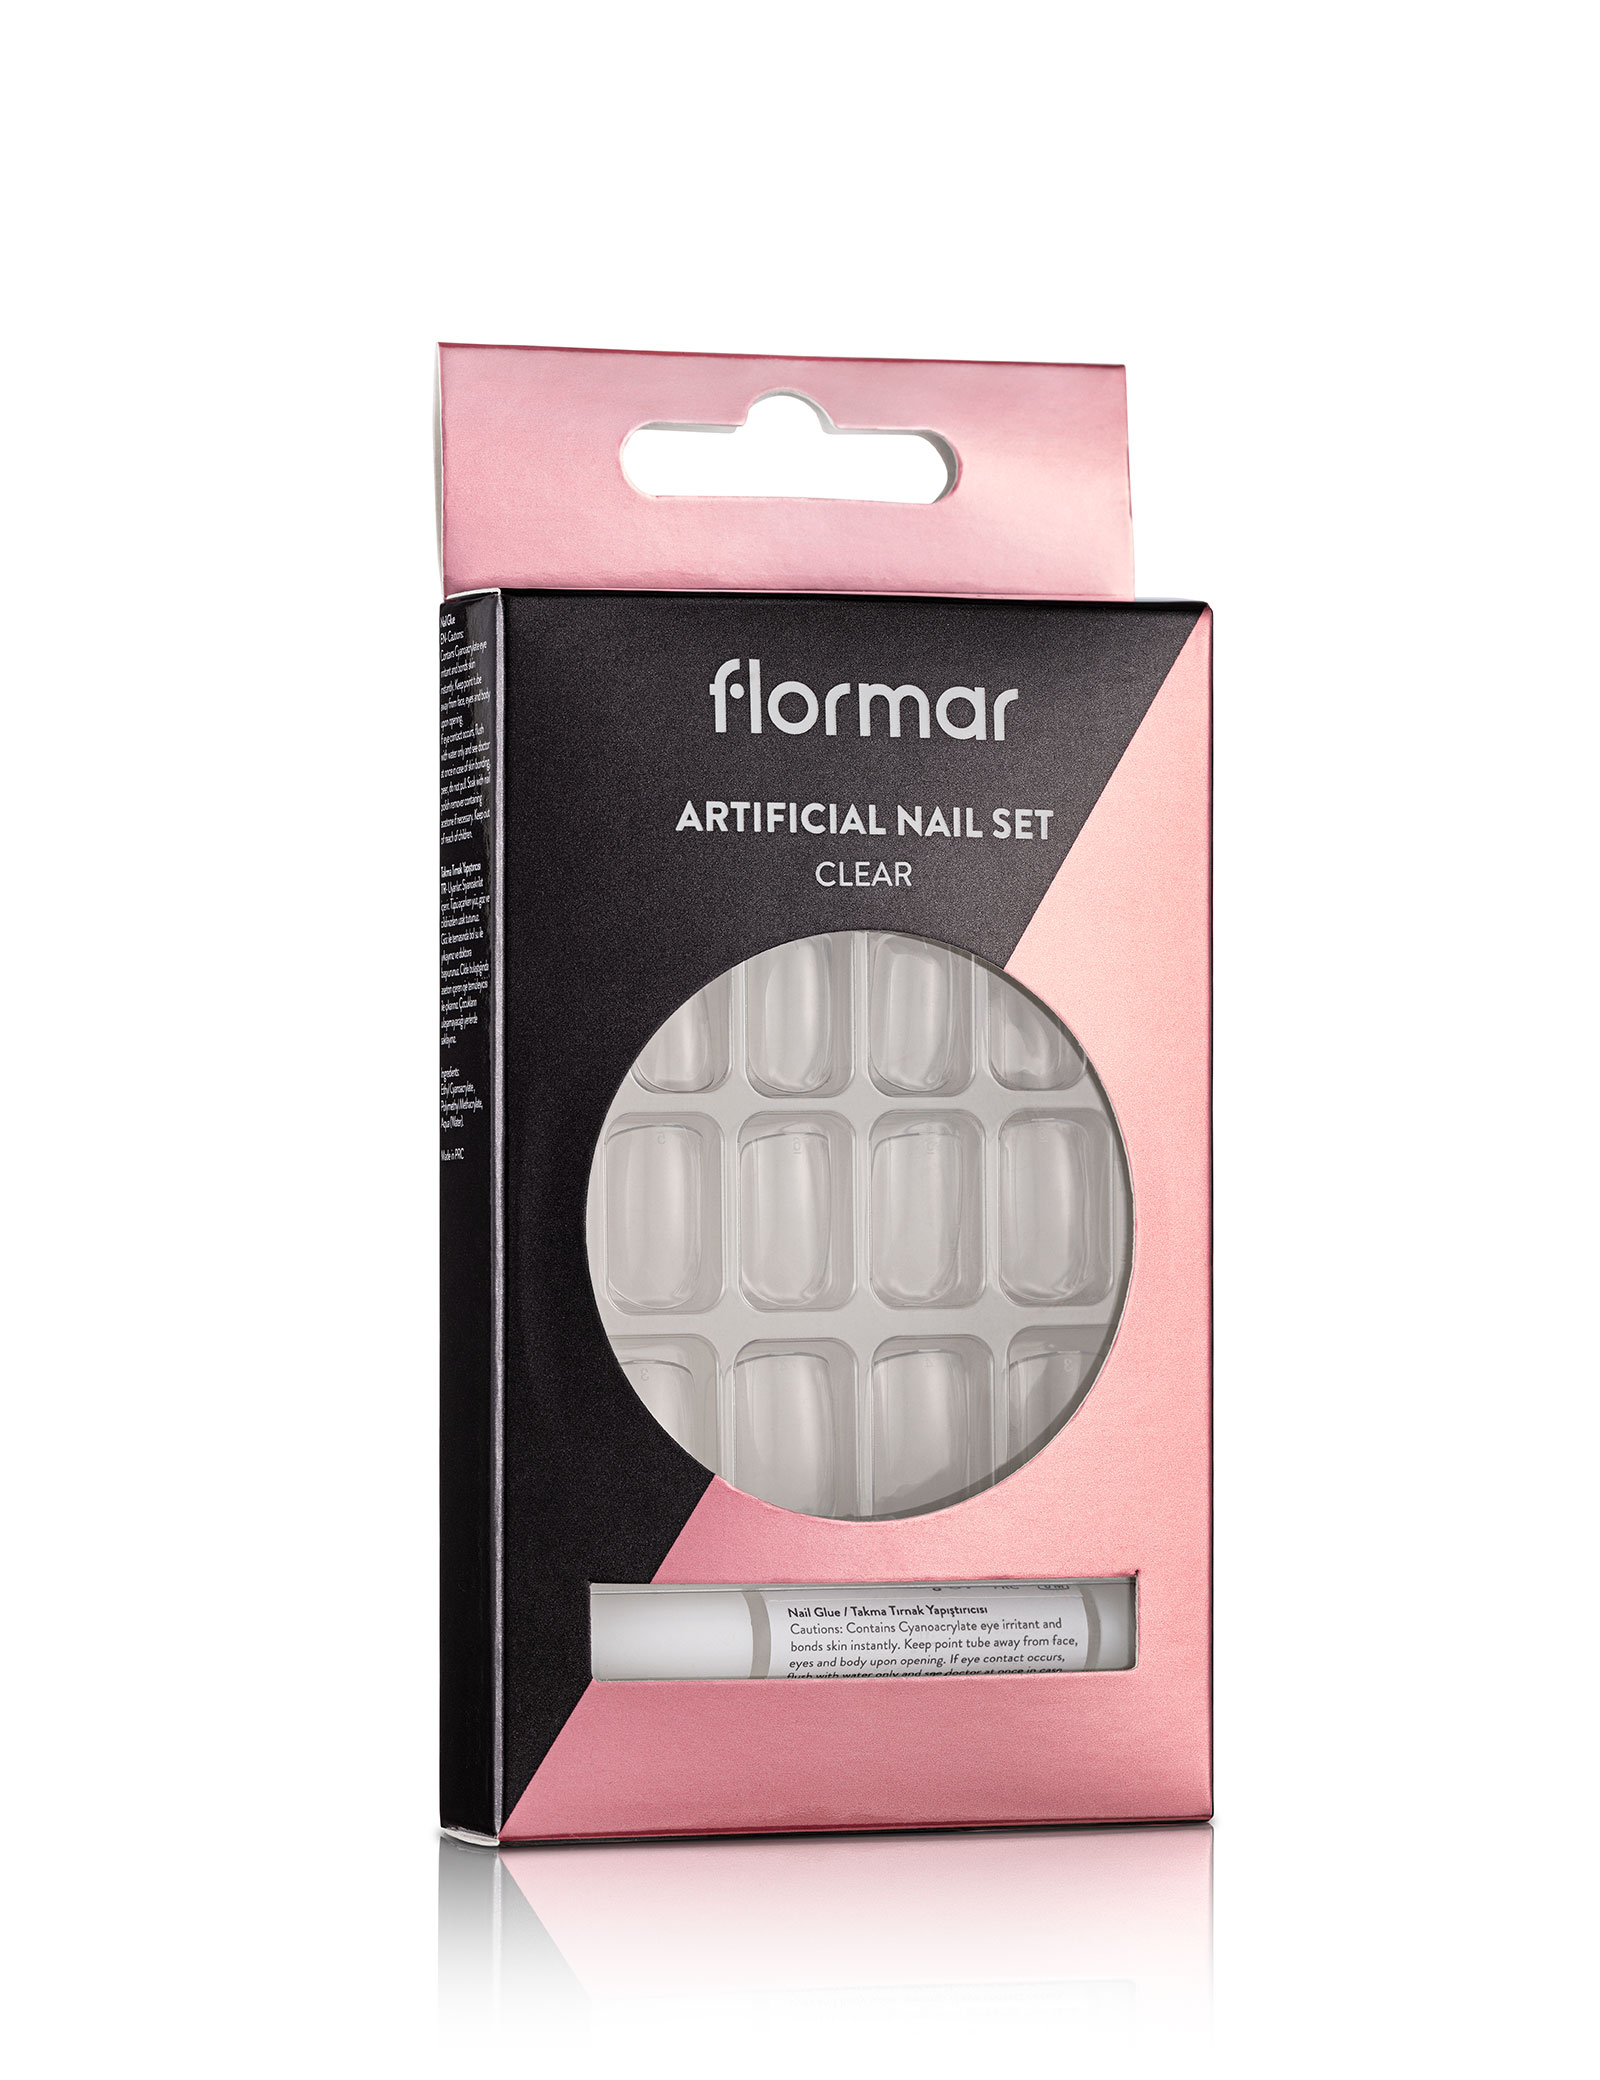 Flormar Artificial Nail Set White